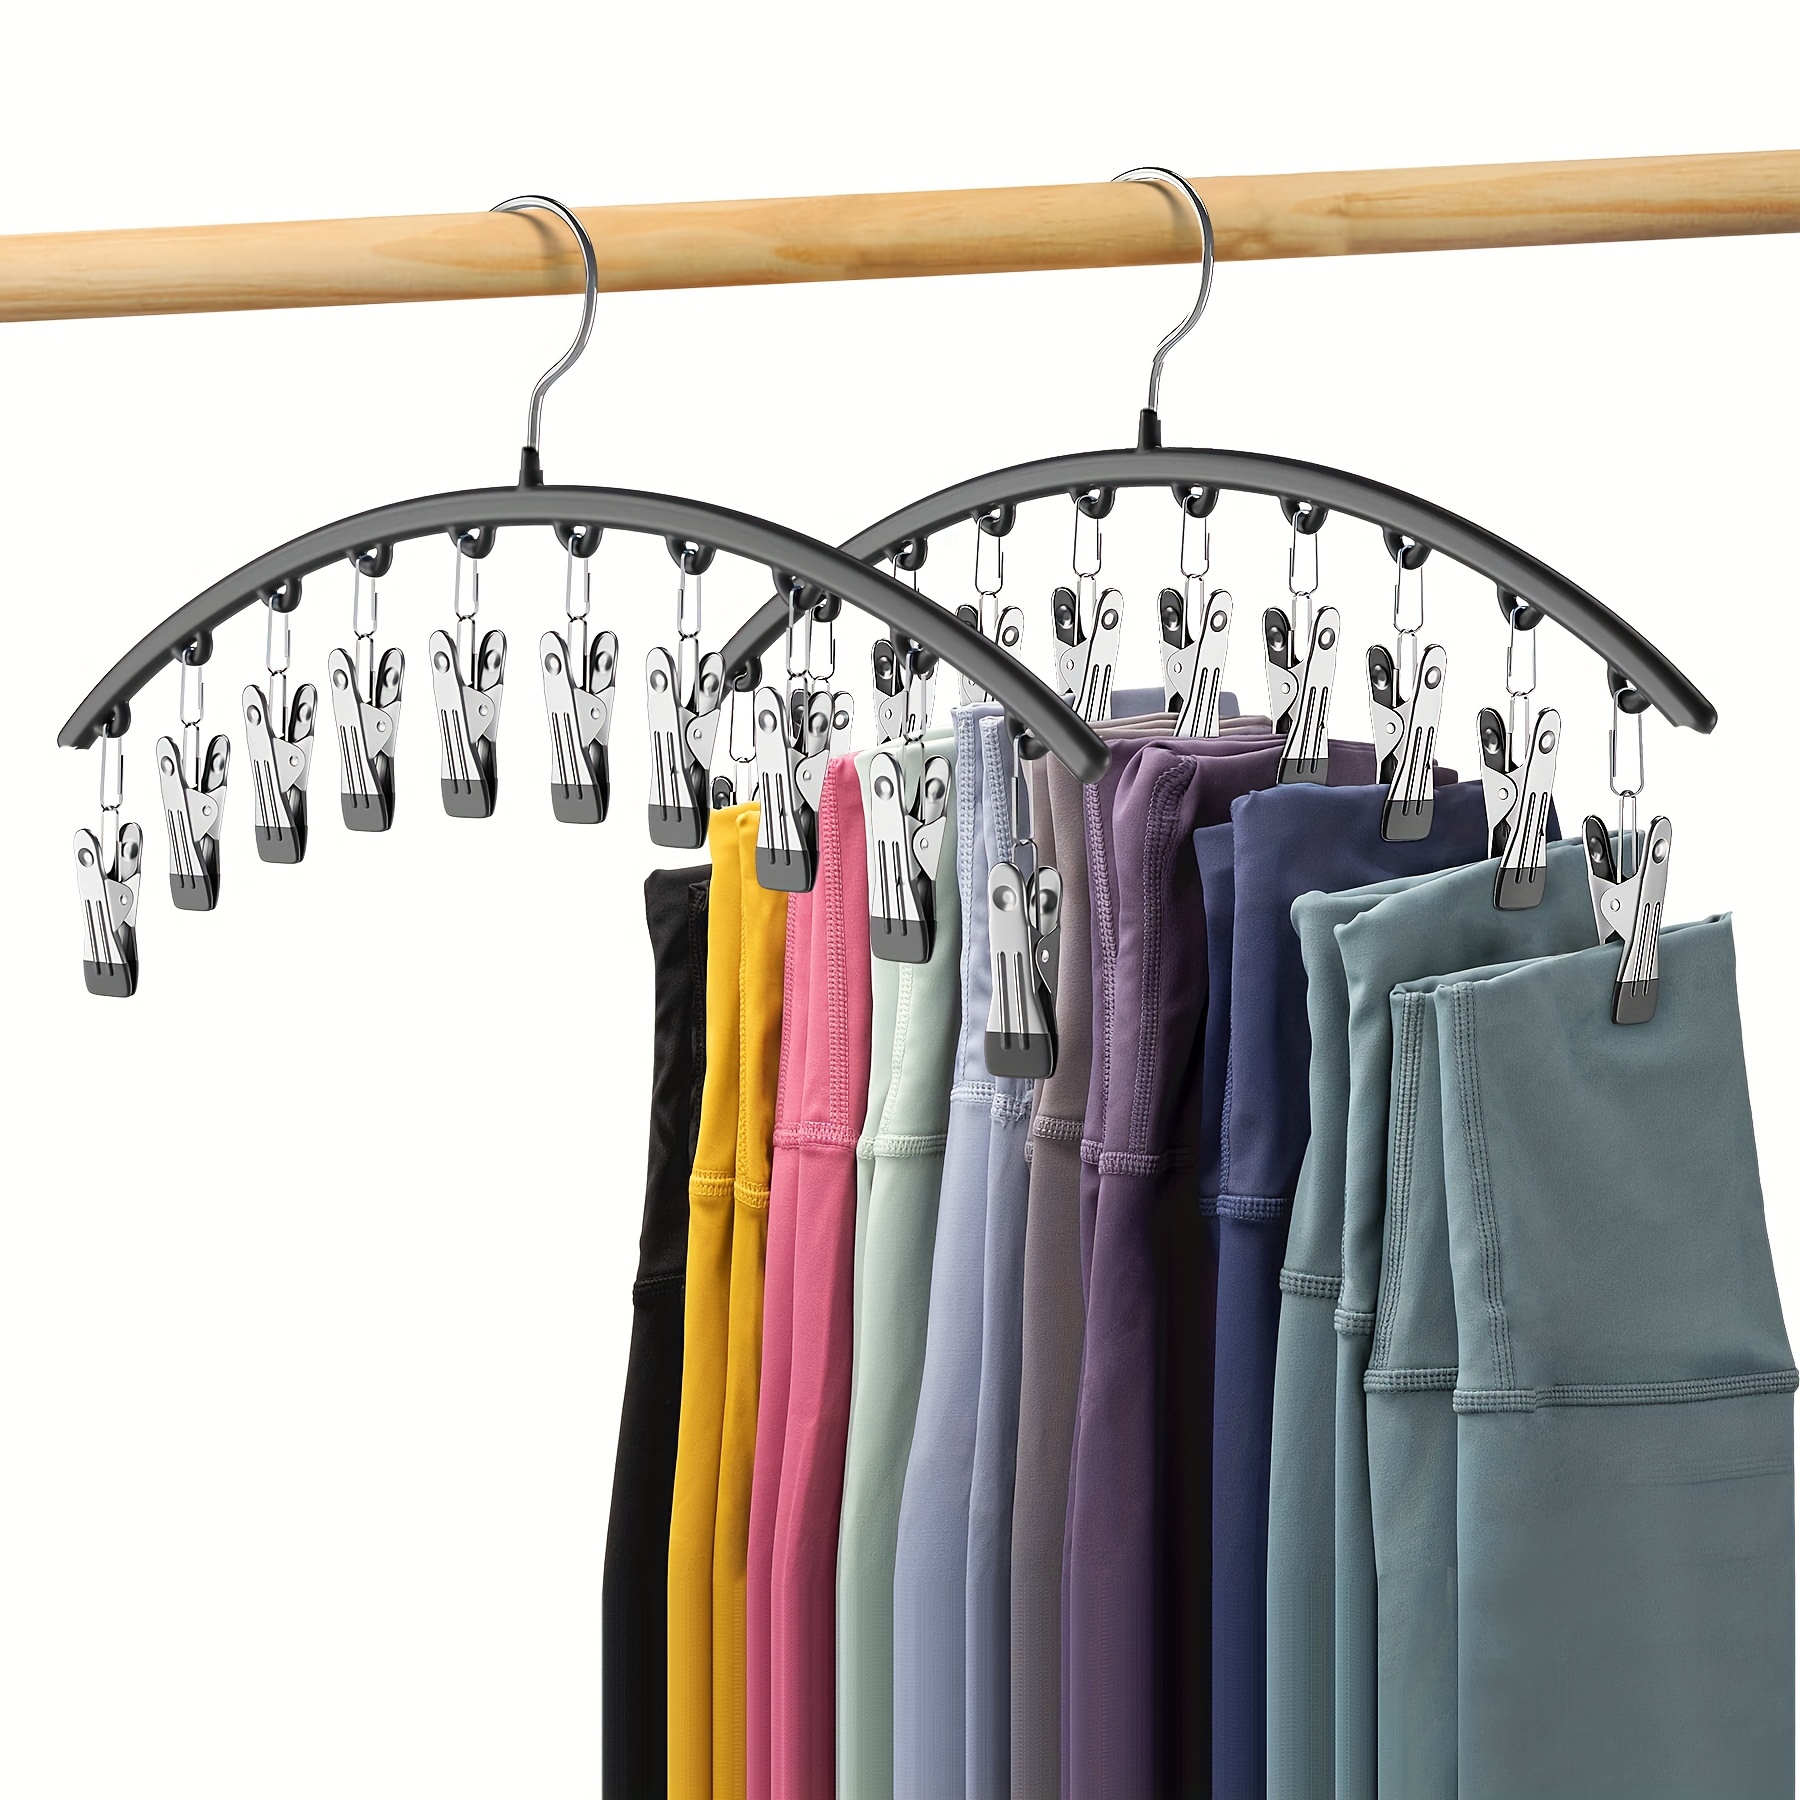 Hang-Gear Tough Heavy Duty Hangers